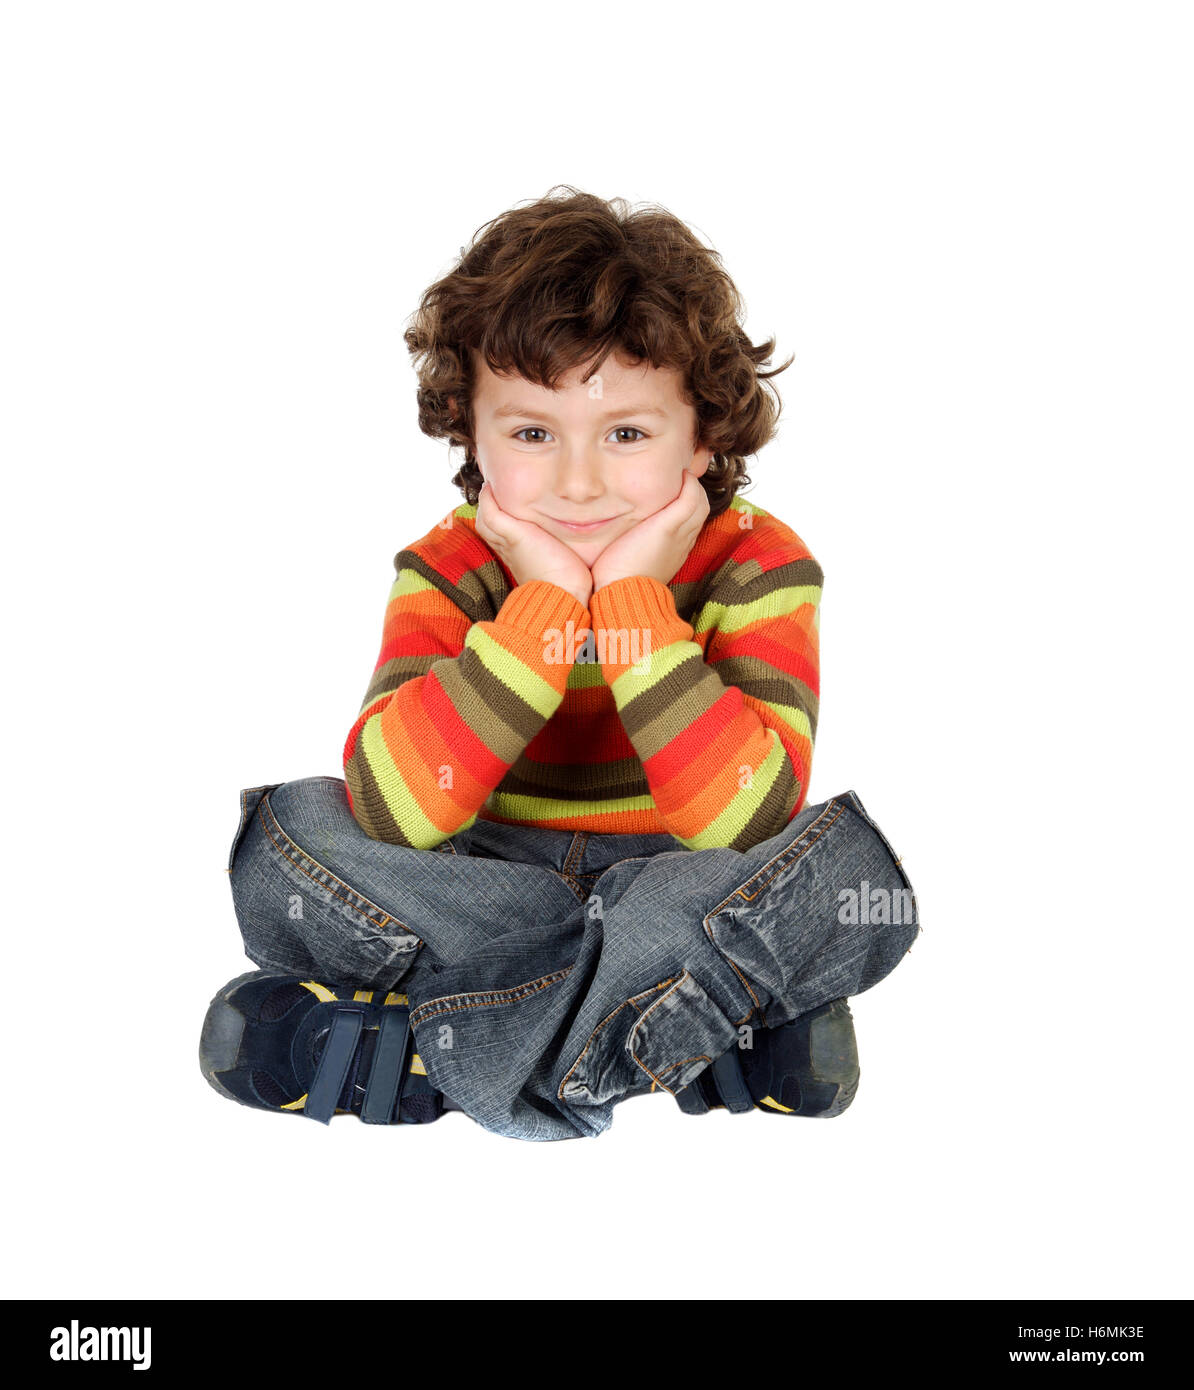 Agradable muchacho con siete años sentado en el piso blanco pensando Foto de stock